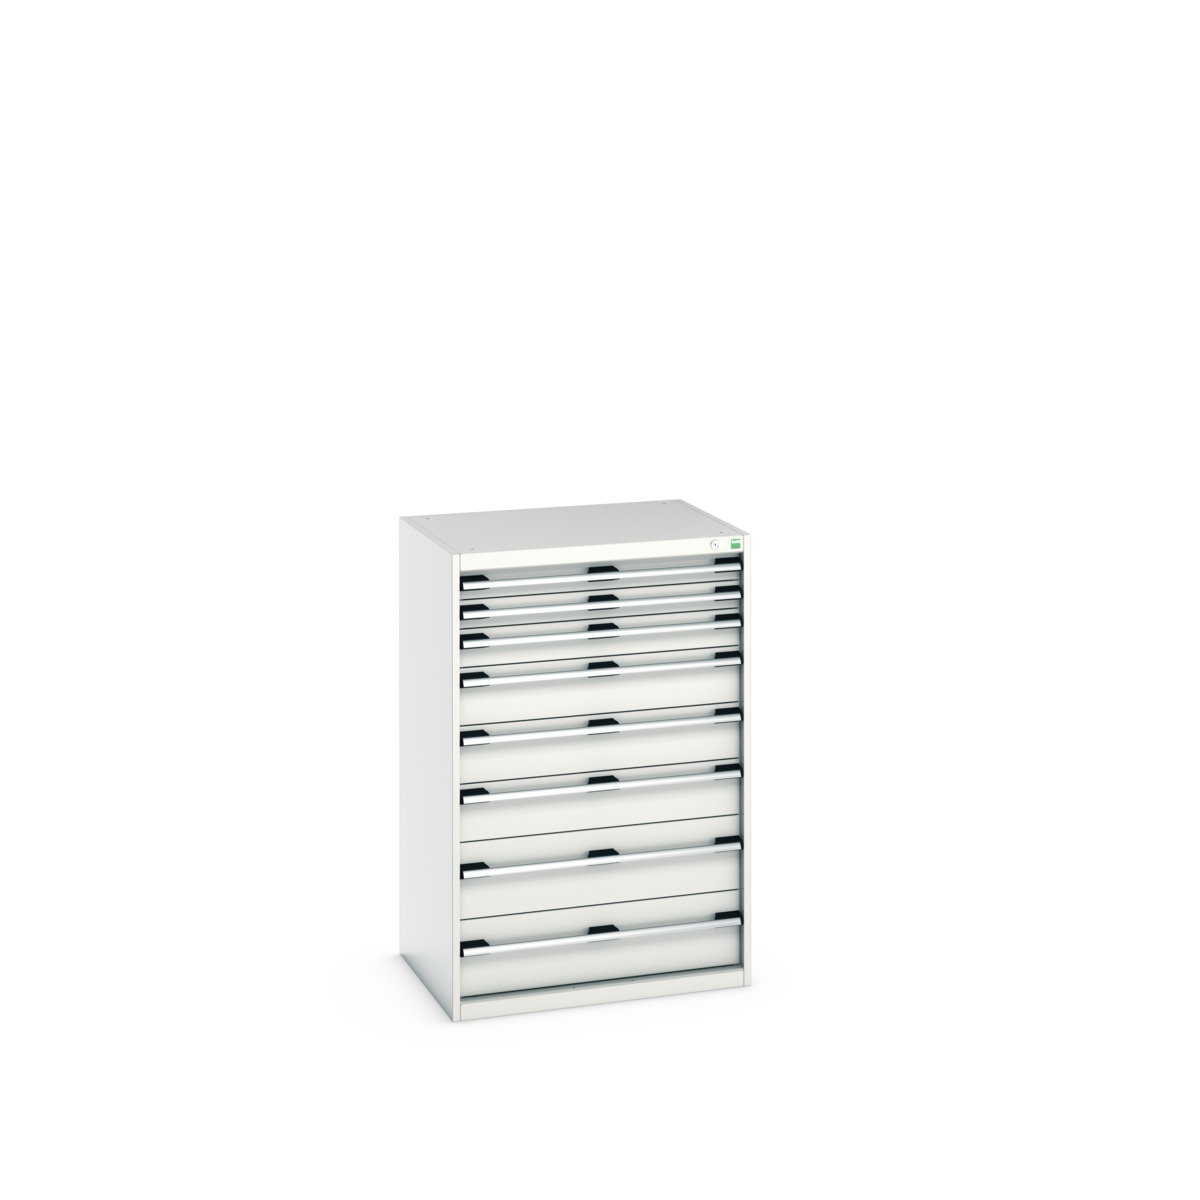 40020061.16V - cubio drawer cabinet